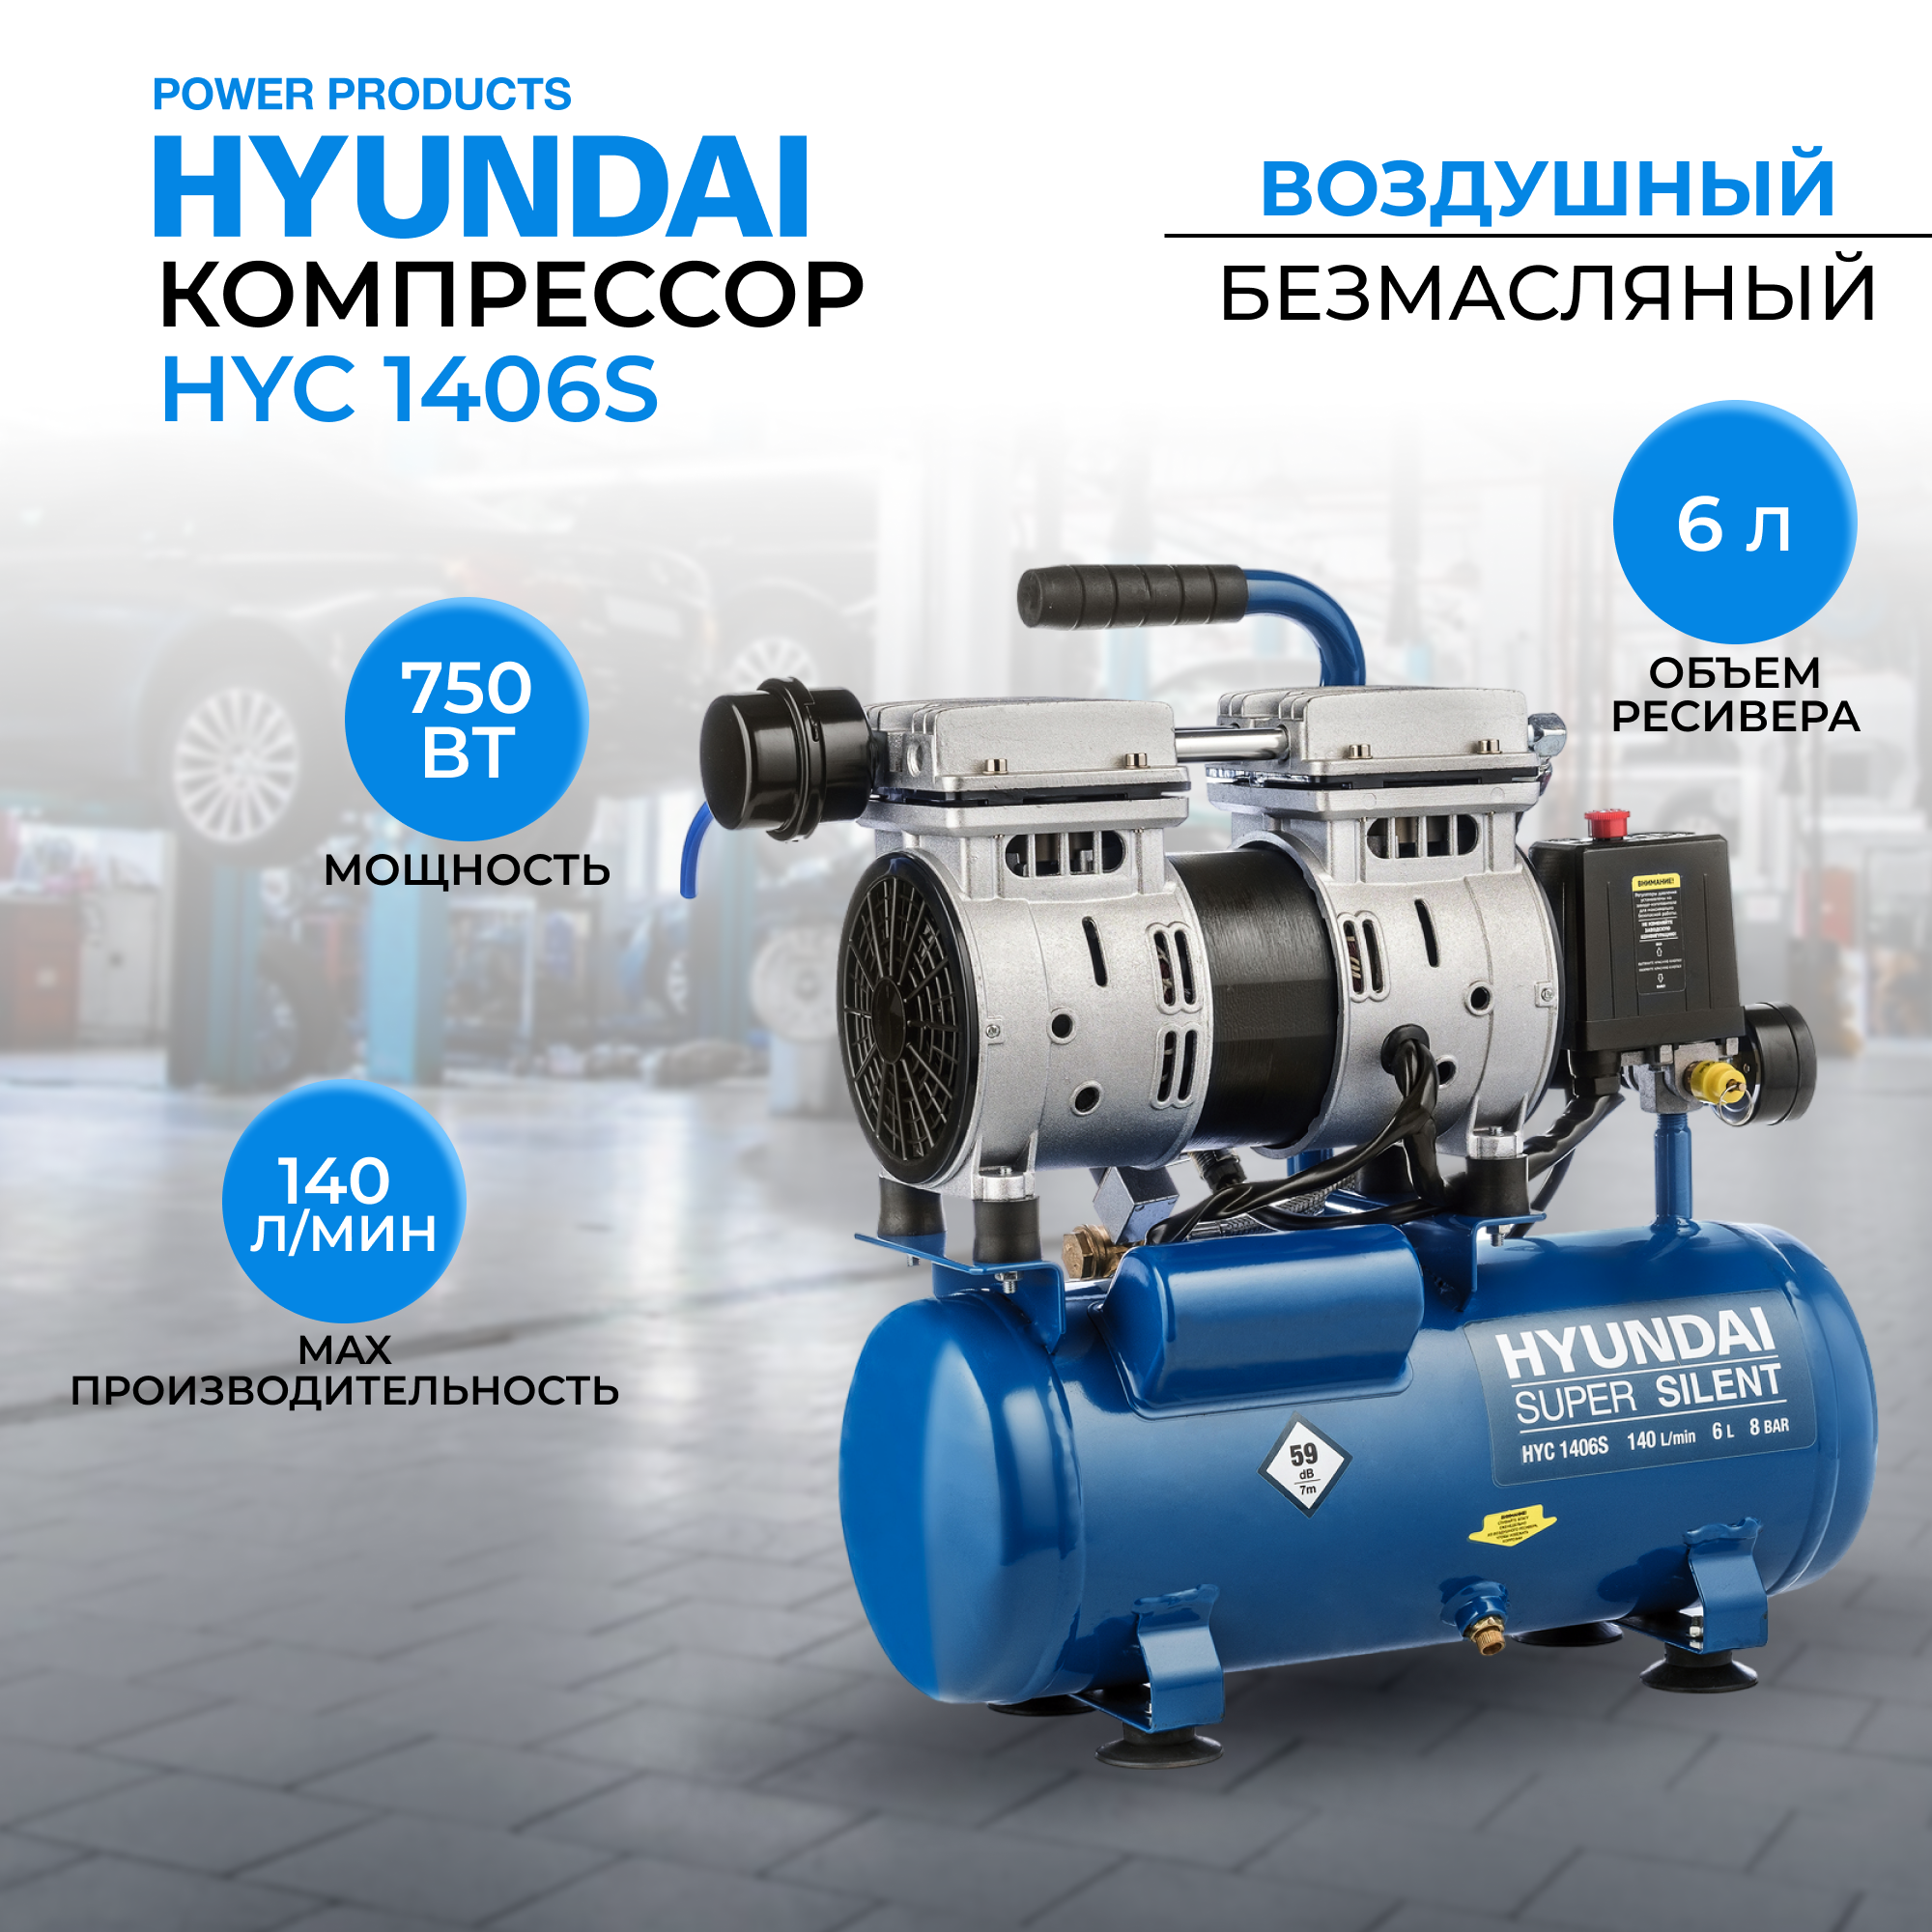 Воздушный поршневой компрессор Hyundai HYC 1406S безмасляный (140 л/мин, 750Вт, 8 бар)